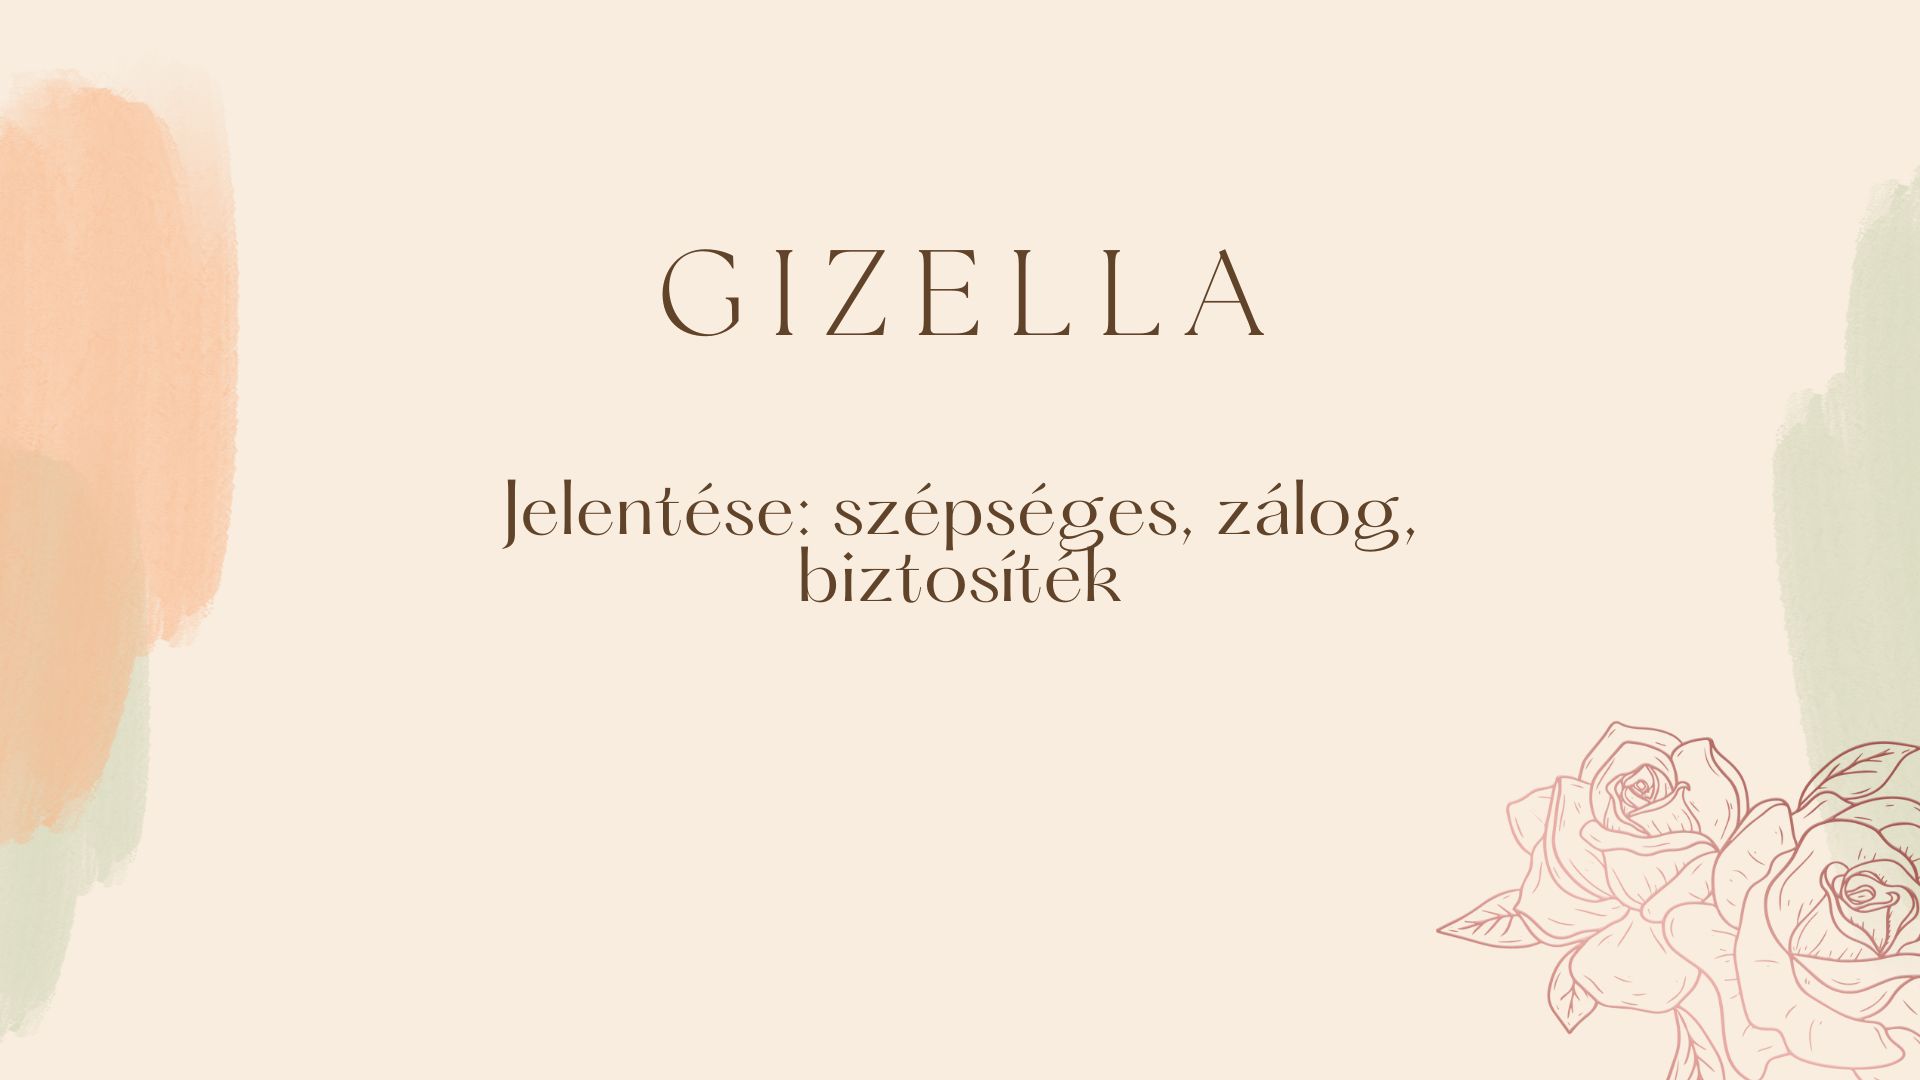 Gizella név jelentése